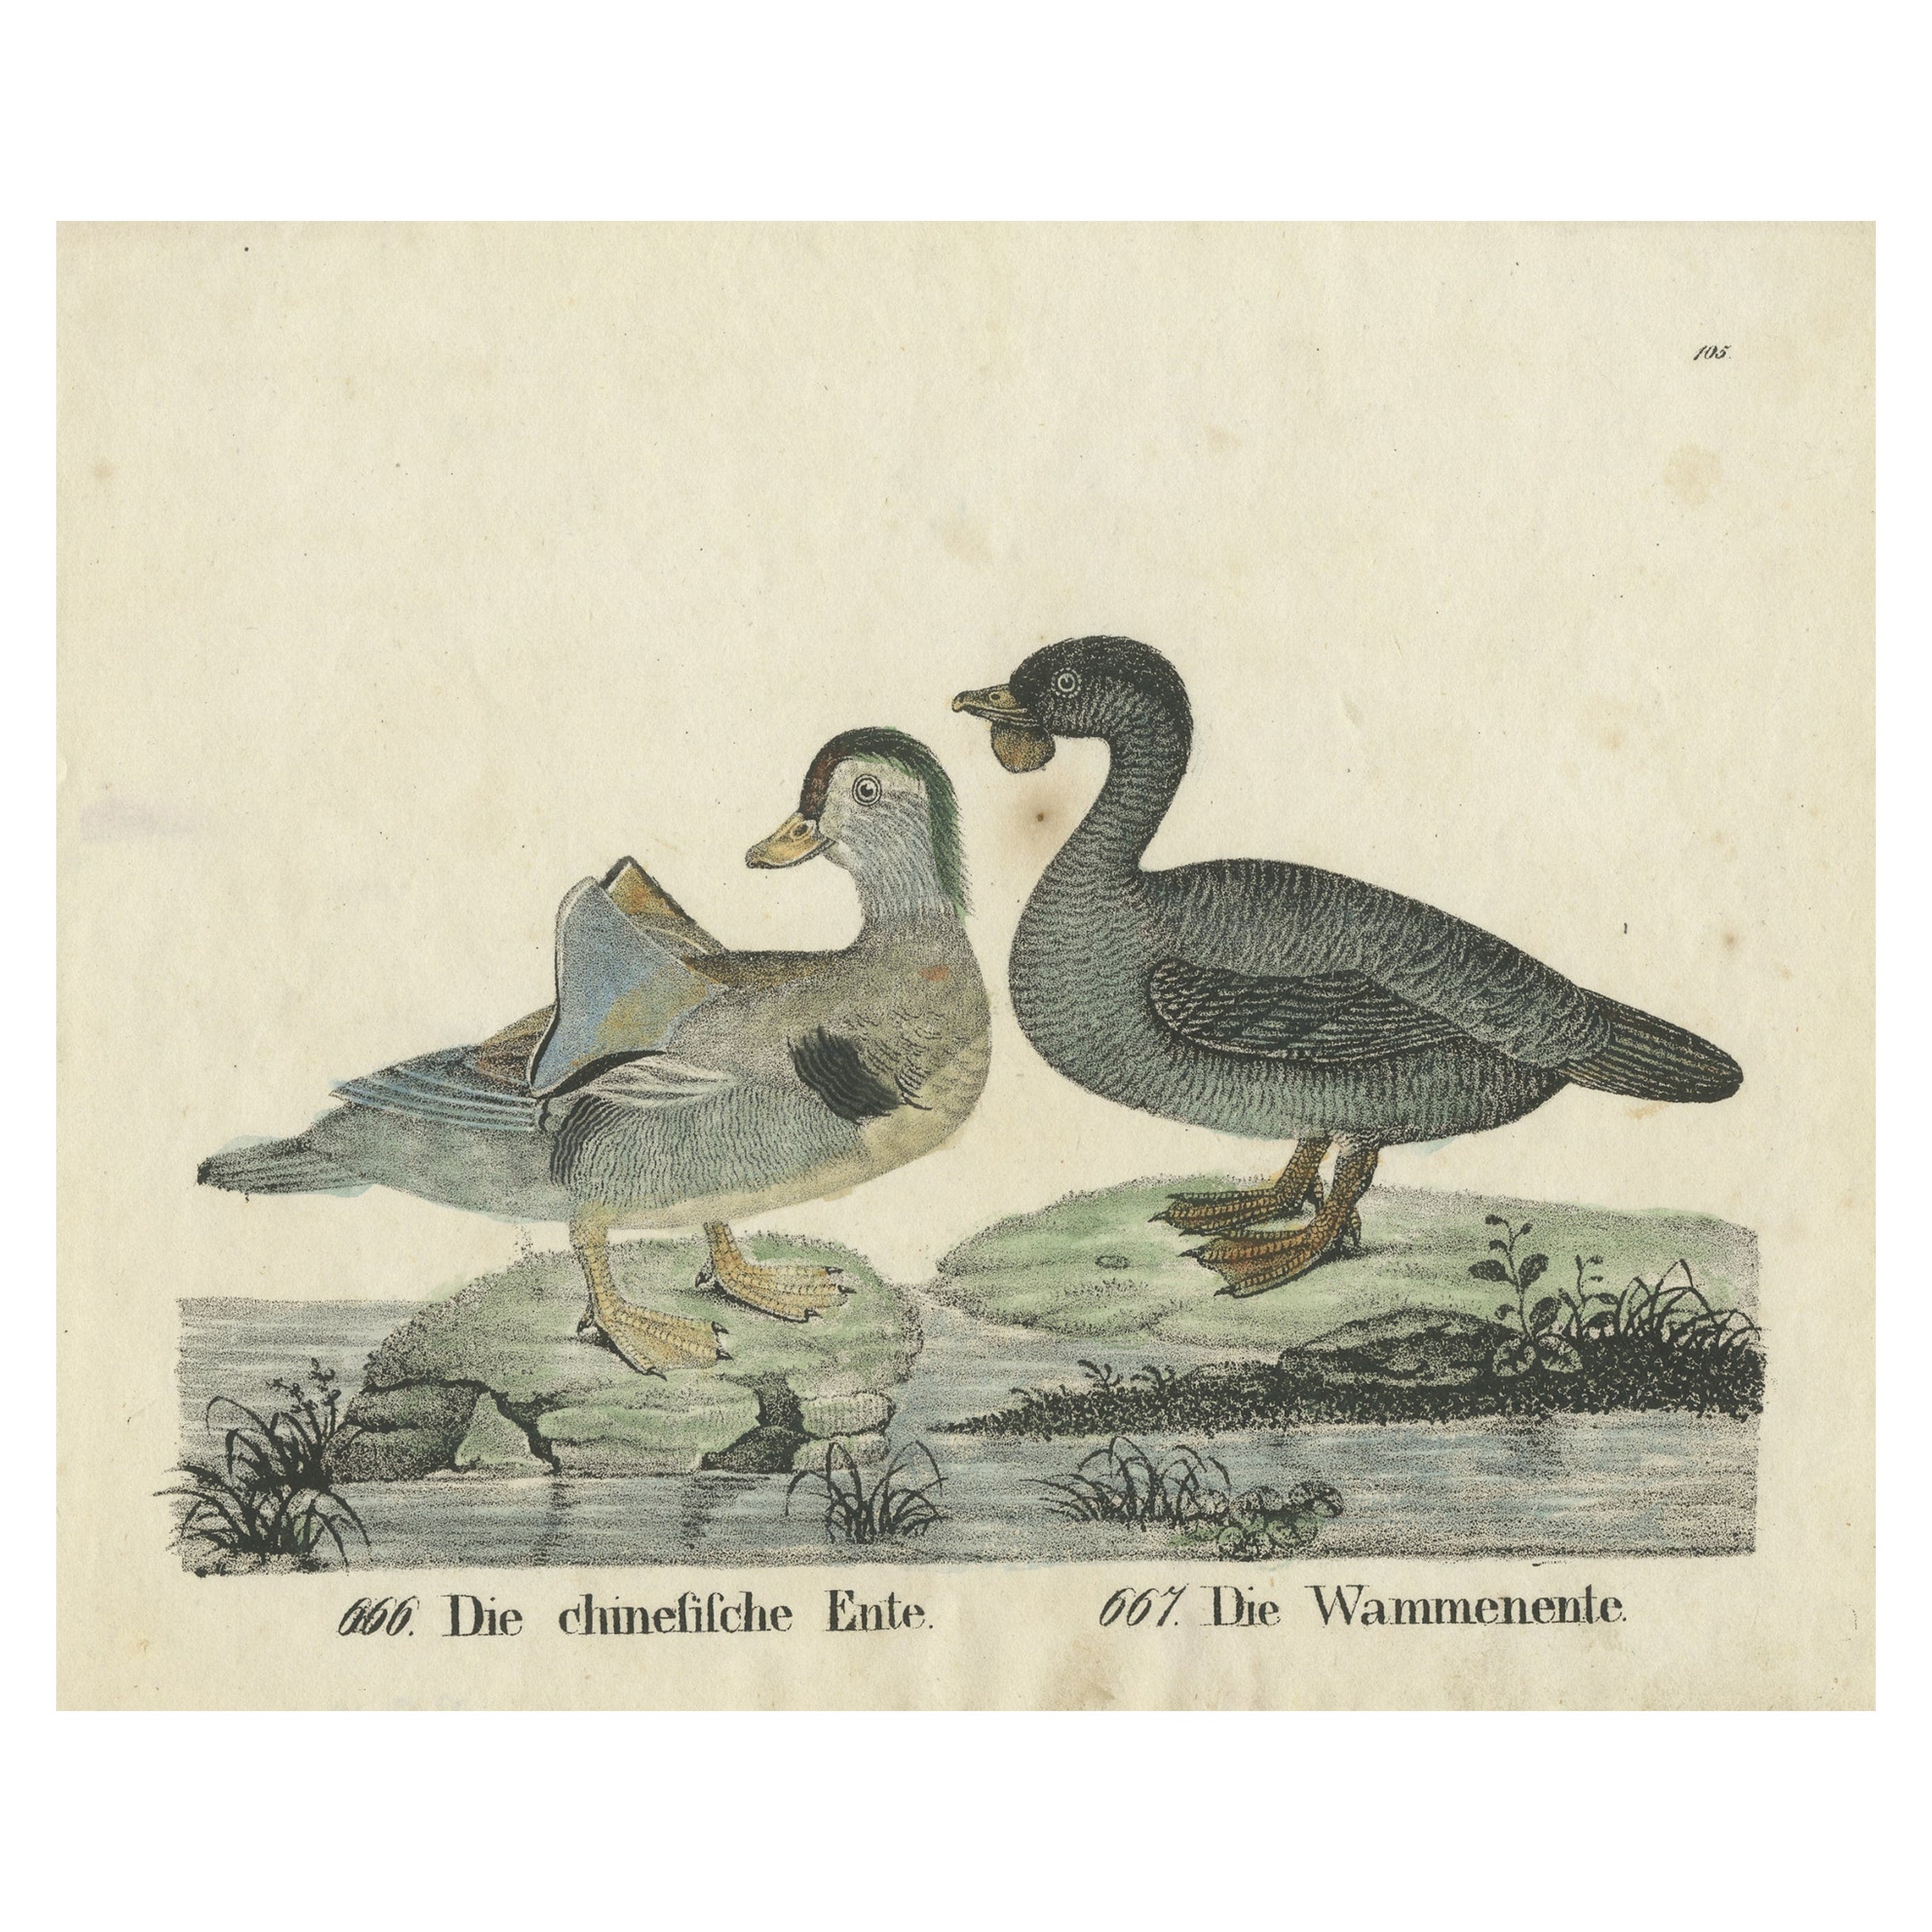 Original-Antikdruck von zwei Entenarten